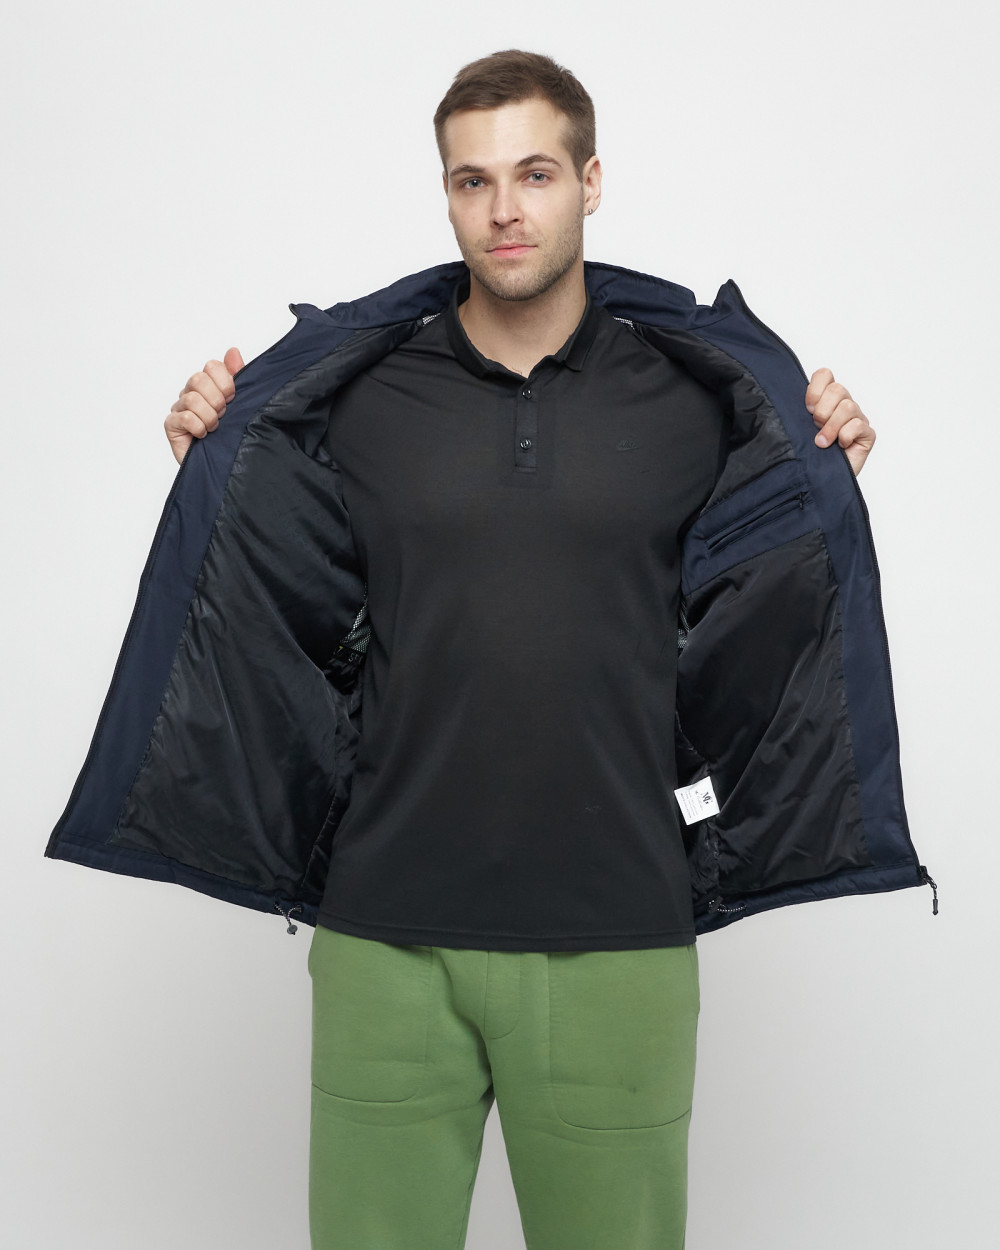 Купить куртку мужскую спортивную весеннюю оптом от производителя недорого в Москве 8808TS 1